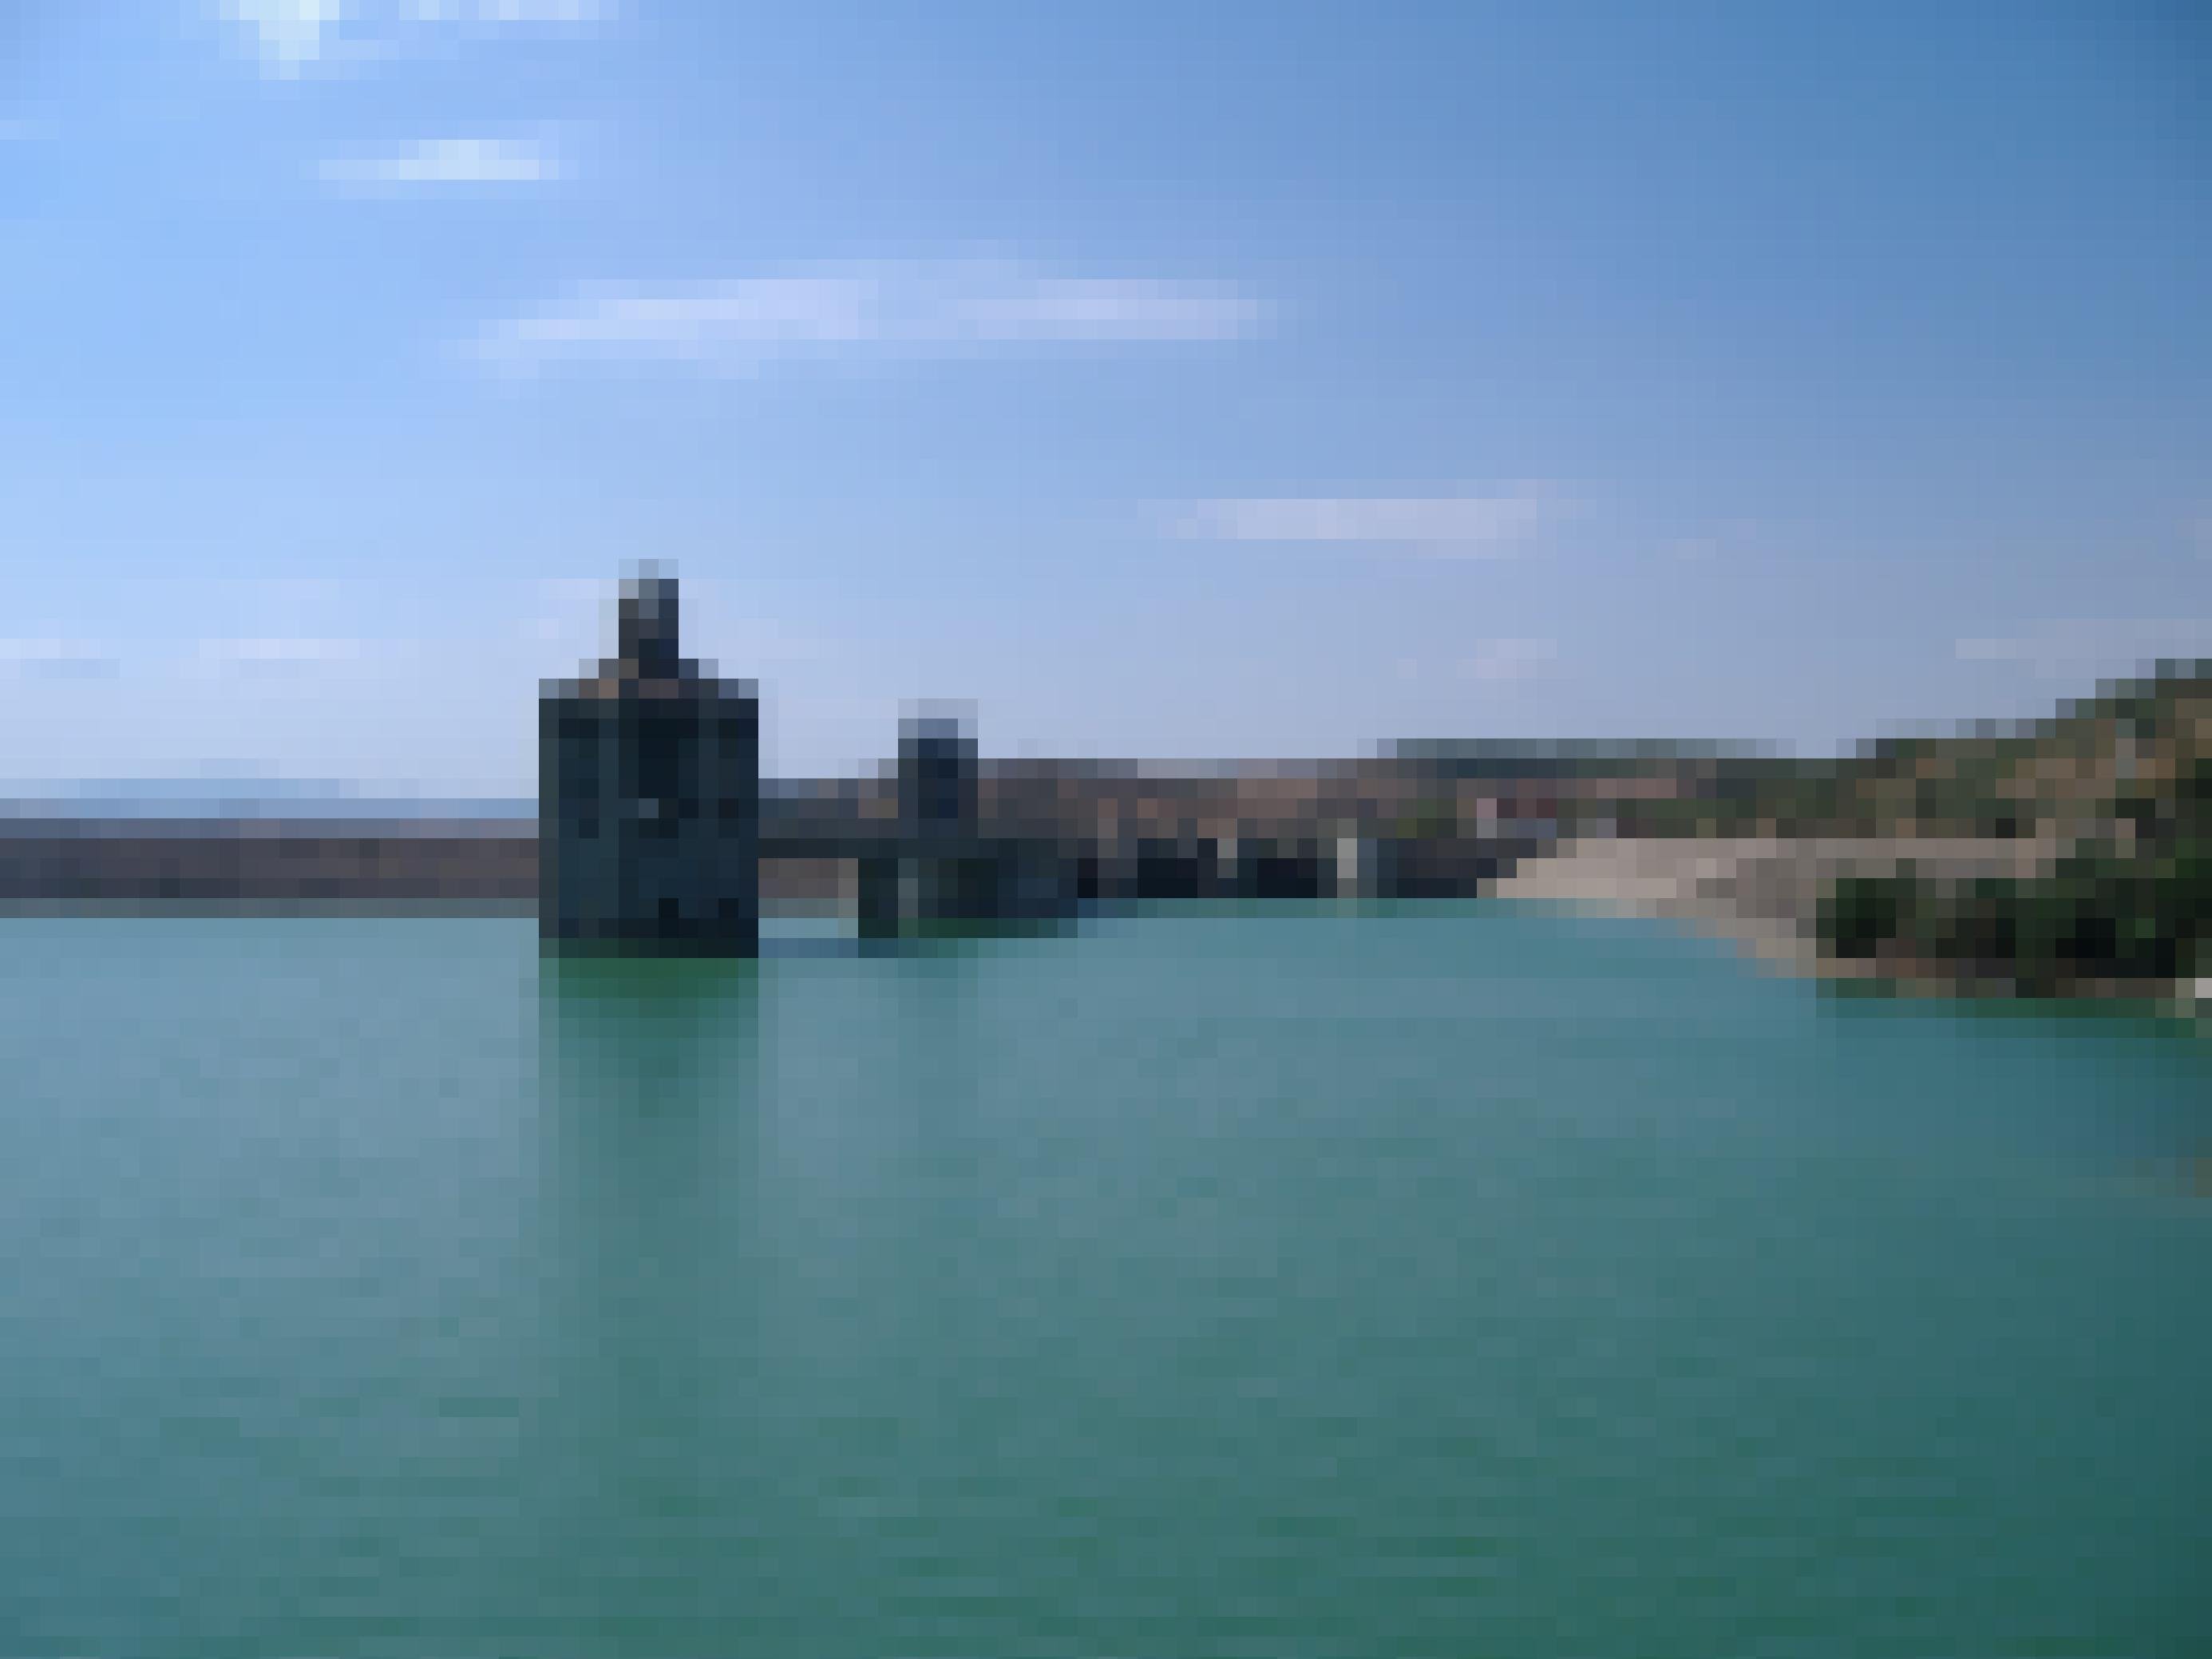 Bild des Staudamms von Sidi Salem mit Überlauf.